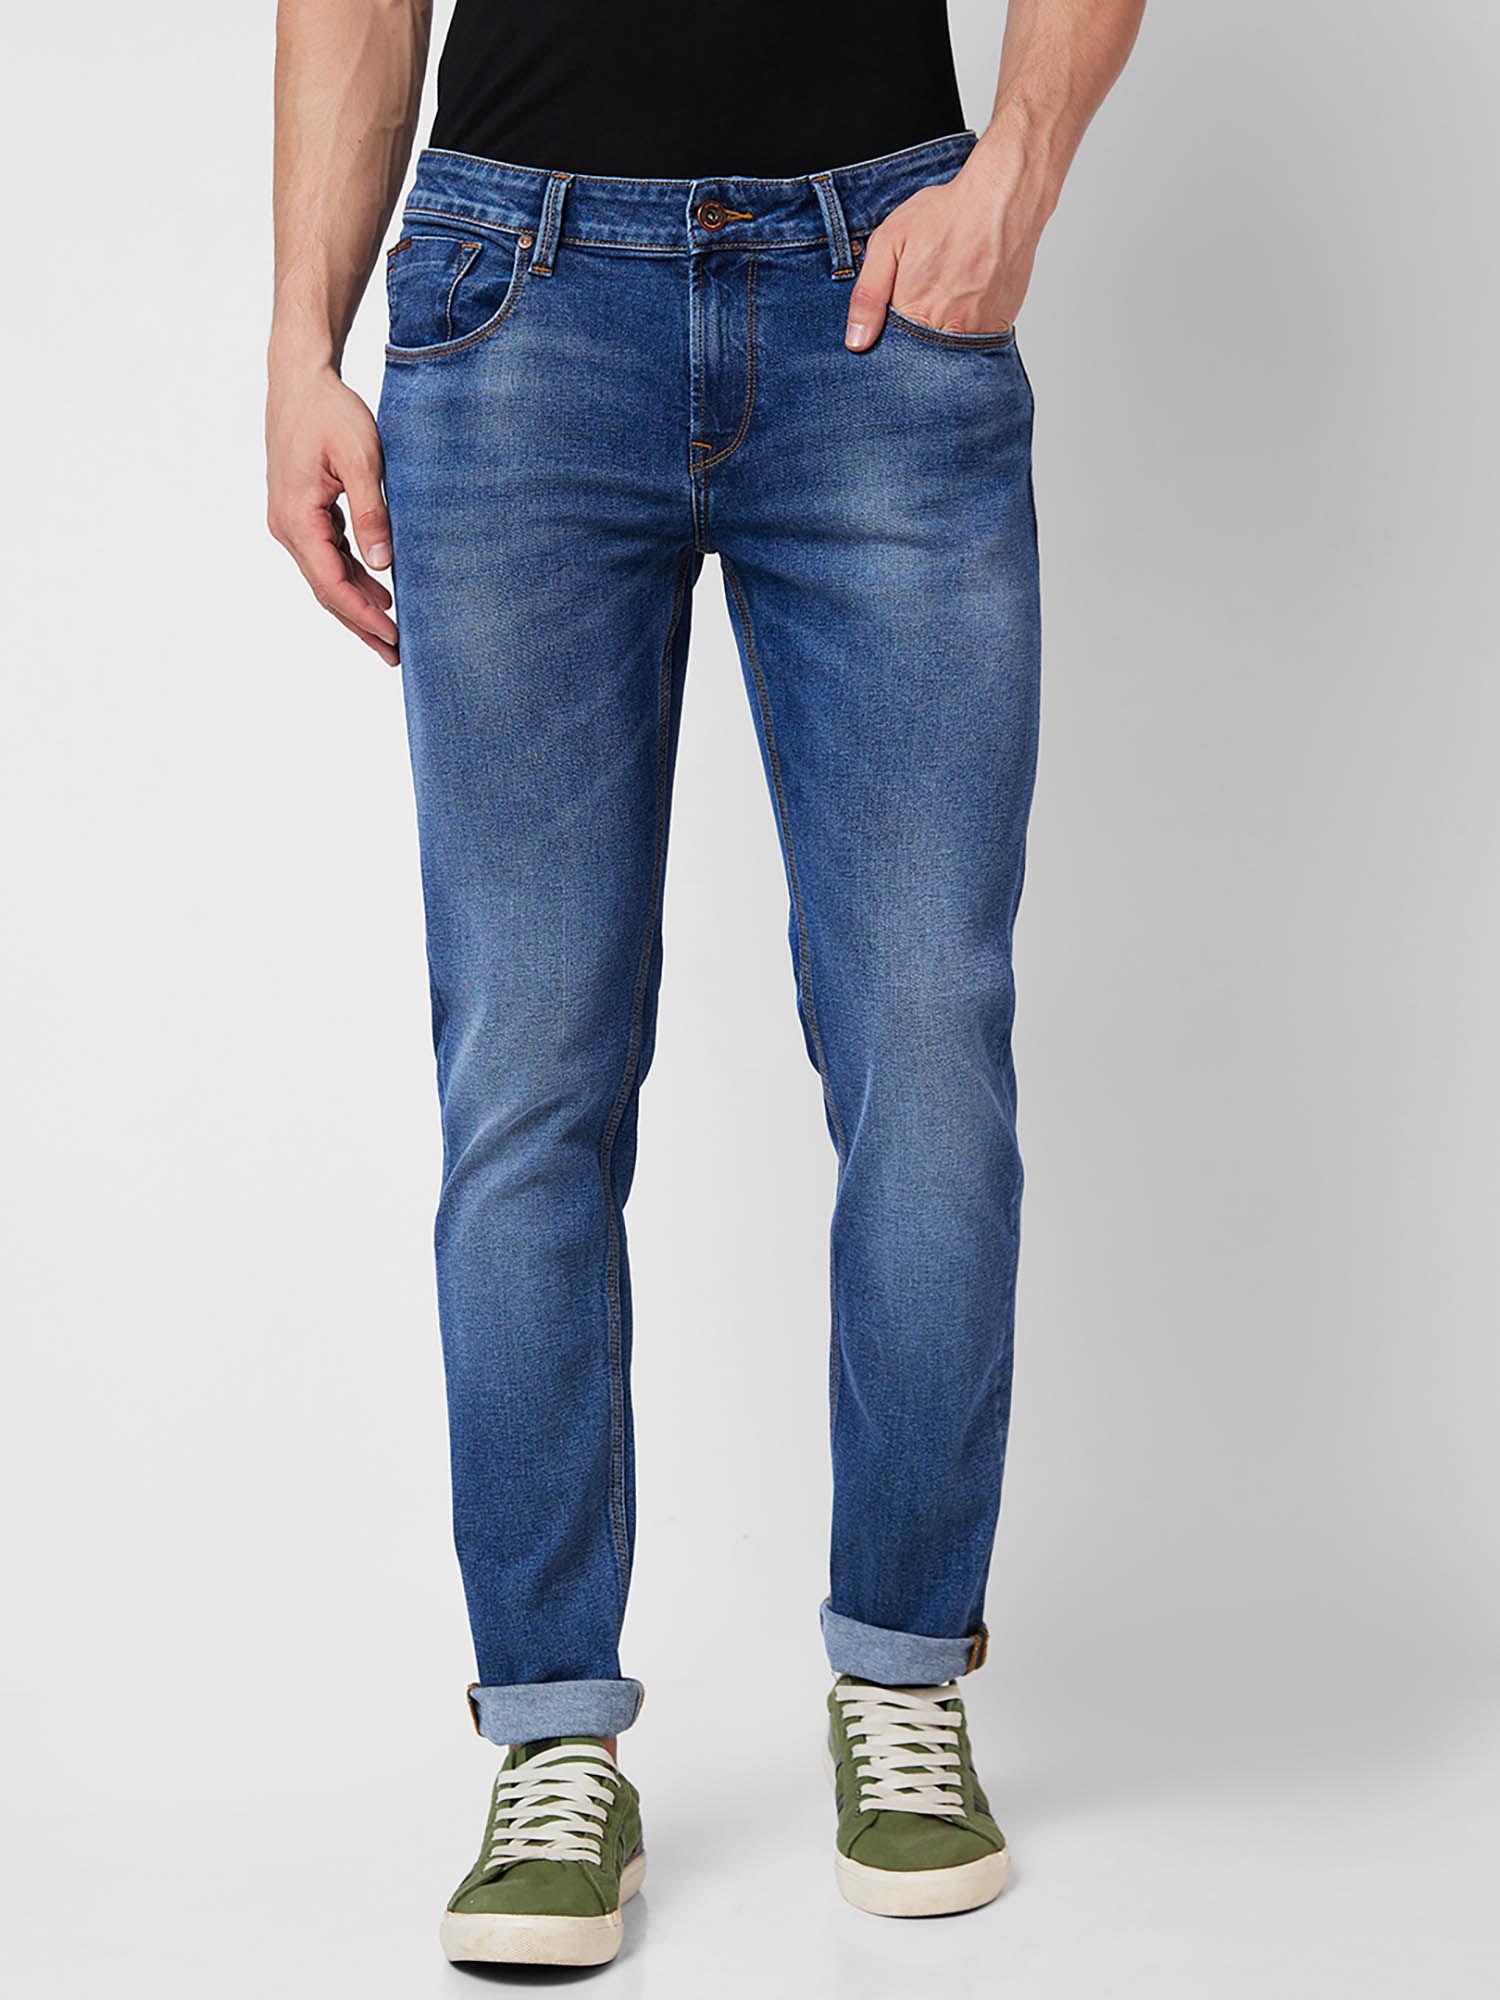 Low Rise Slim Fit Blue Jeans for Men